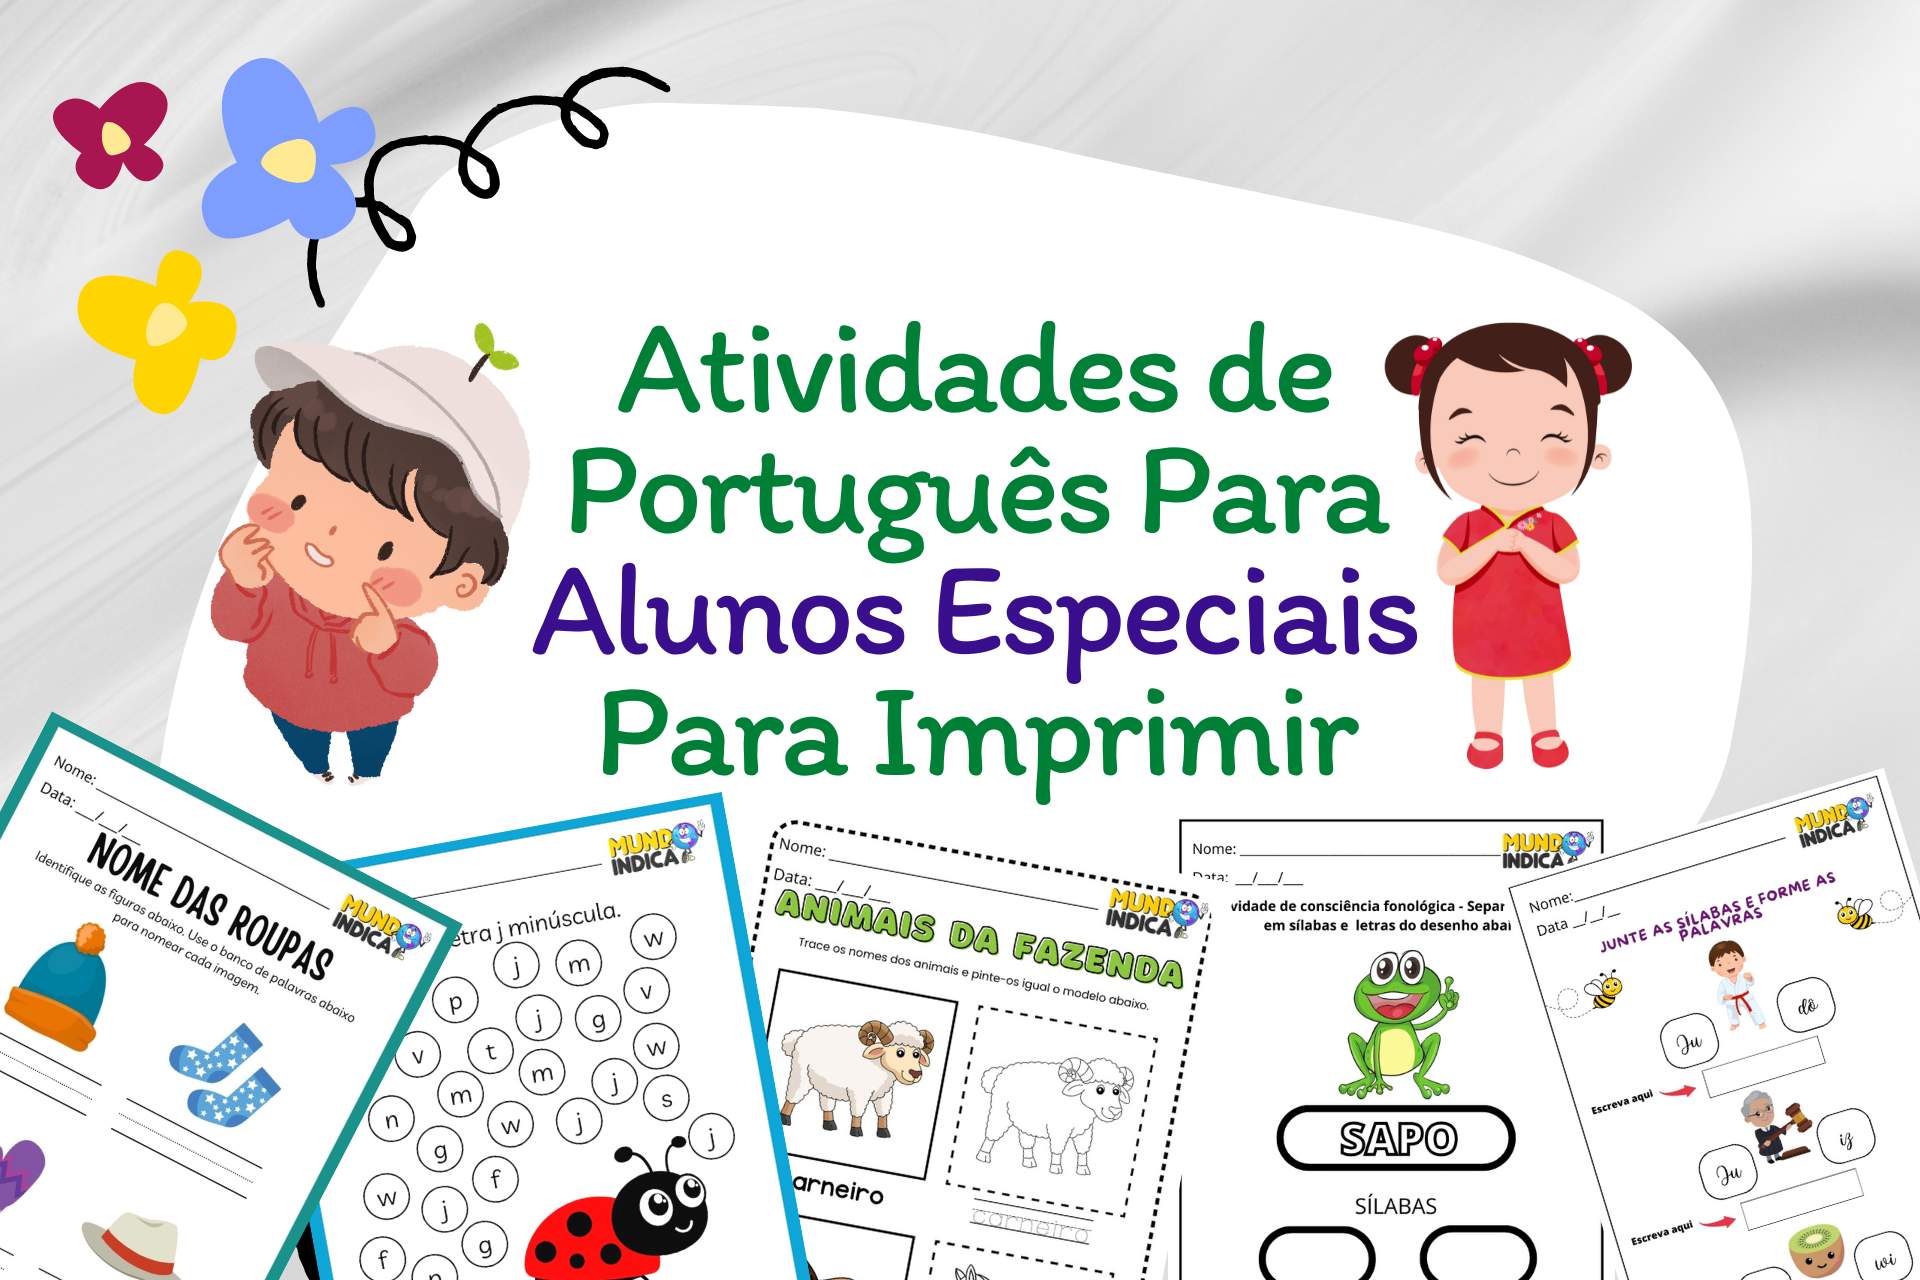 Atividades de Português para Alunos Especiais para imprimir